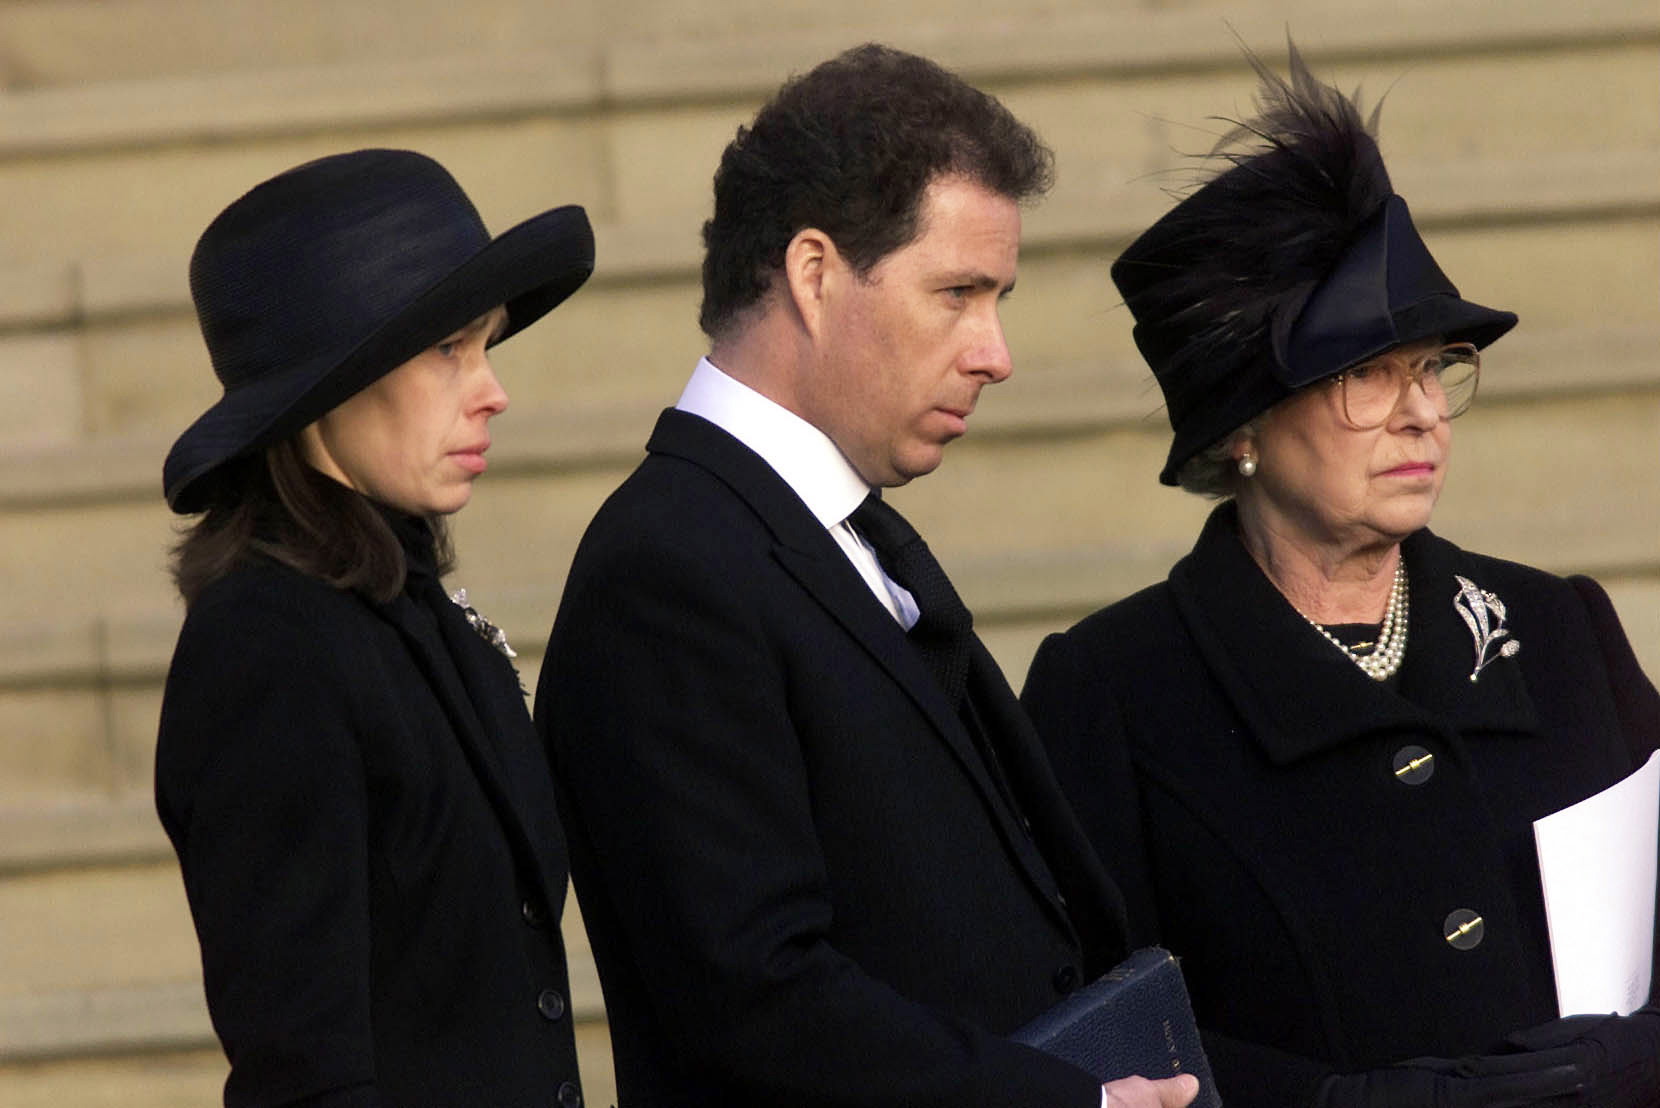 Lady Sarah Chatto, David Armstrong-Jones Linley et la reine Élisabeth II lors des funérailles de la princesse Margaret à la chapelle Saint-Georges le 15 février 2002 au château de Windsor, au Royaume-Uni. | Source : Getty Images